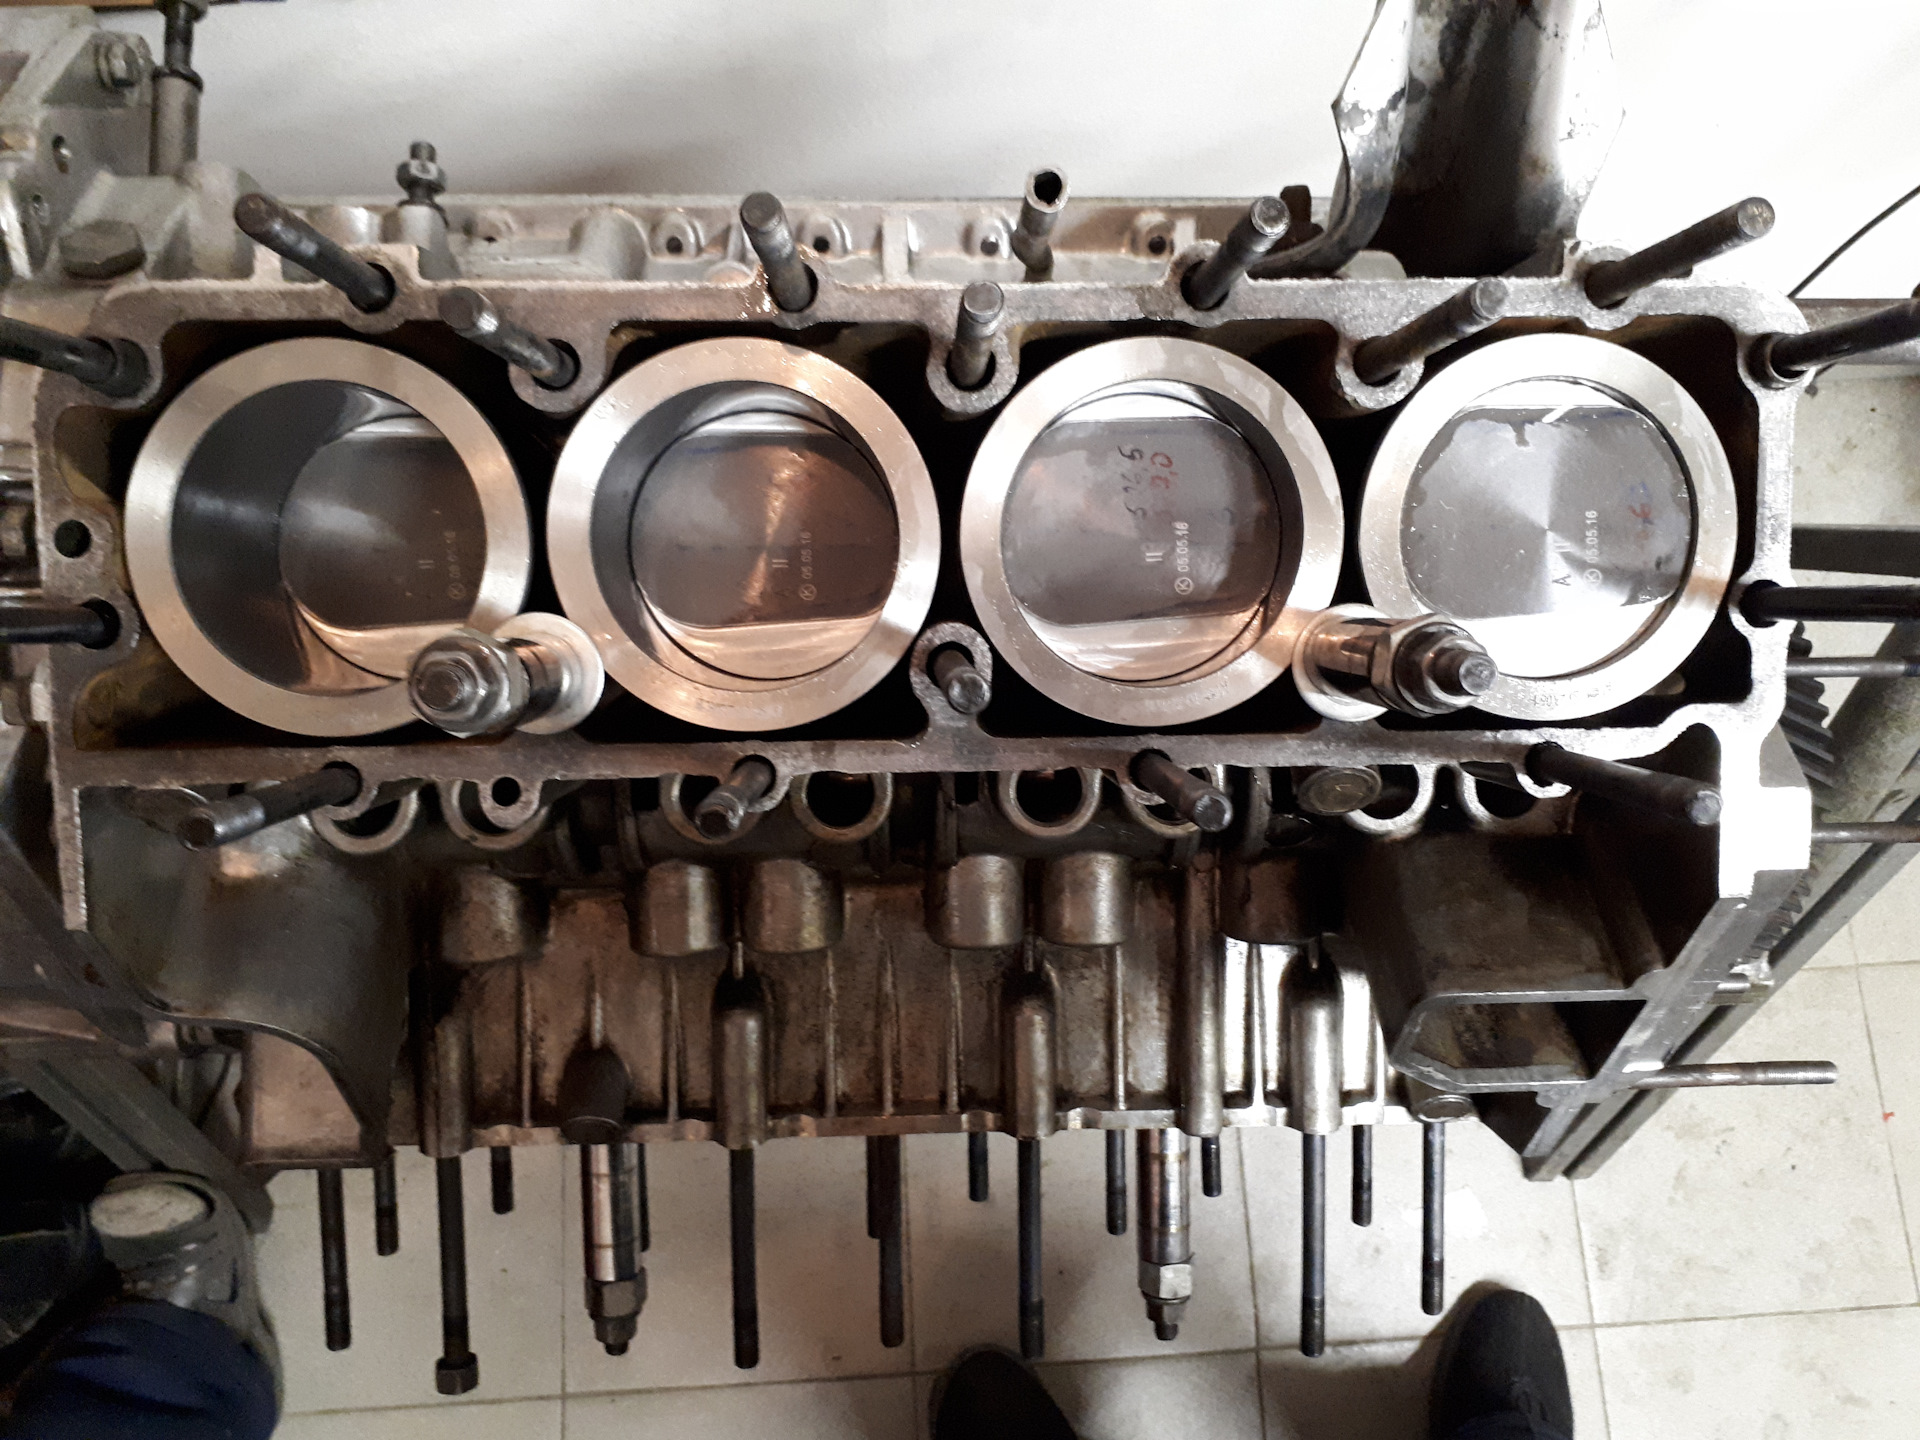 Сборка двигателя газ. Капремонт двигателя ГАЗ 53. ГАЗ 53 переборка двигателя. ЗМЗ 53 сборка двигателя. Гильзовка двигателя ГАЗ 53.